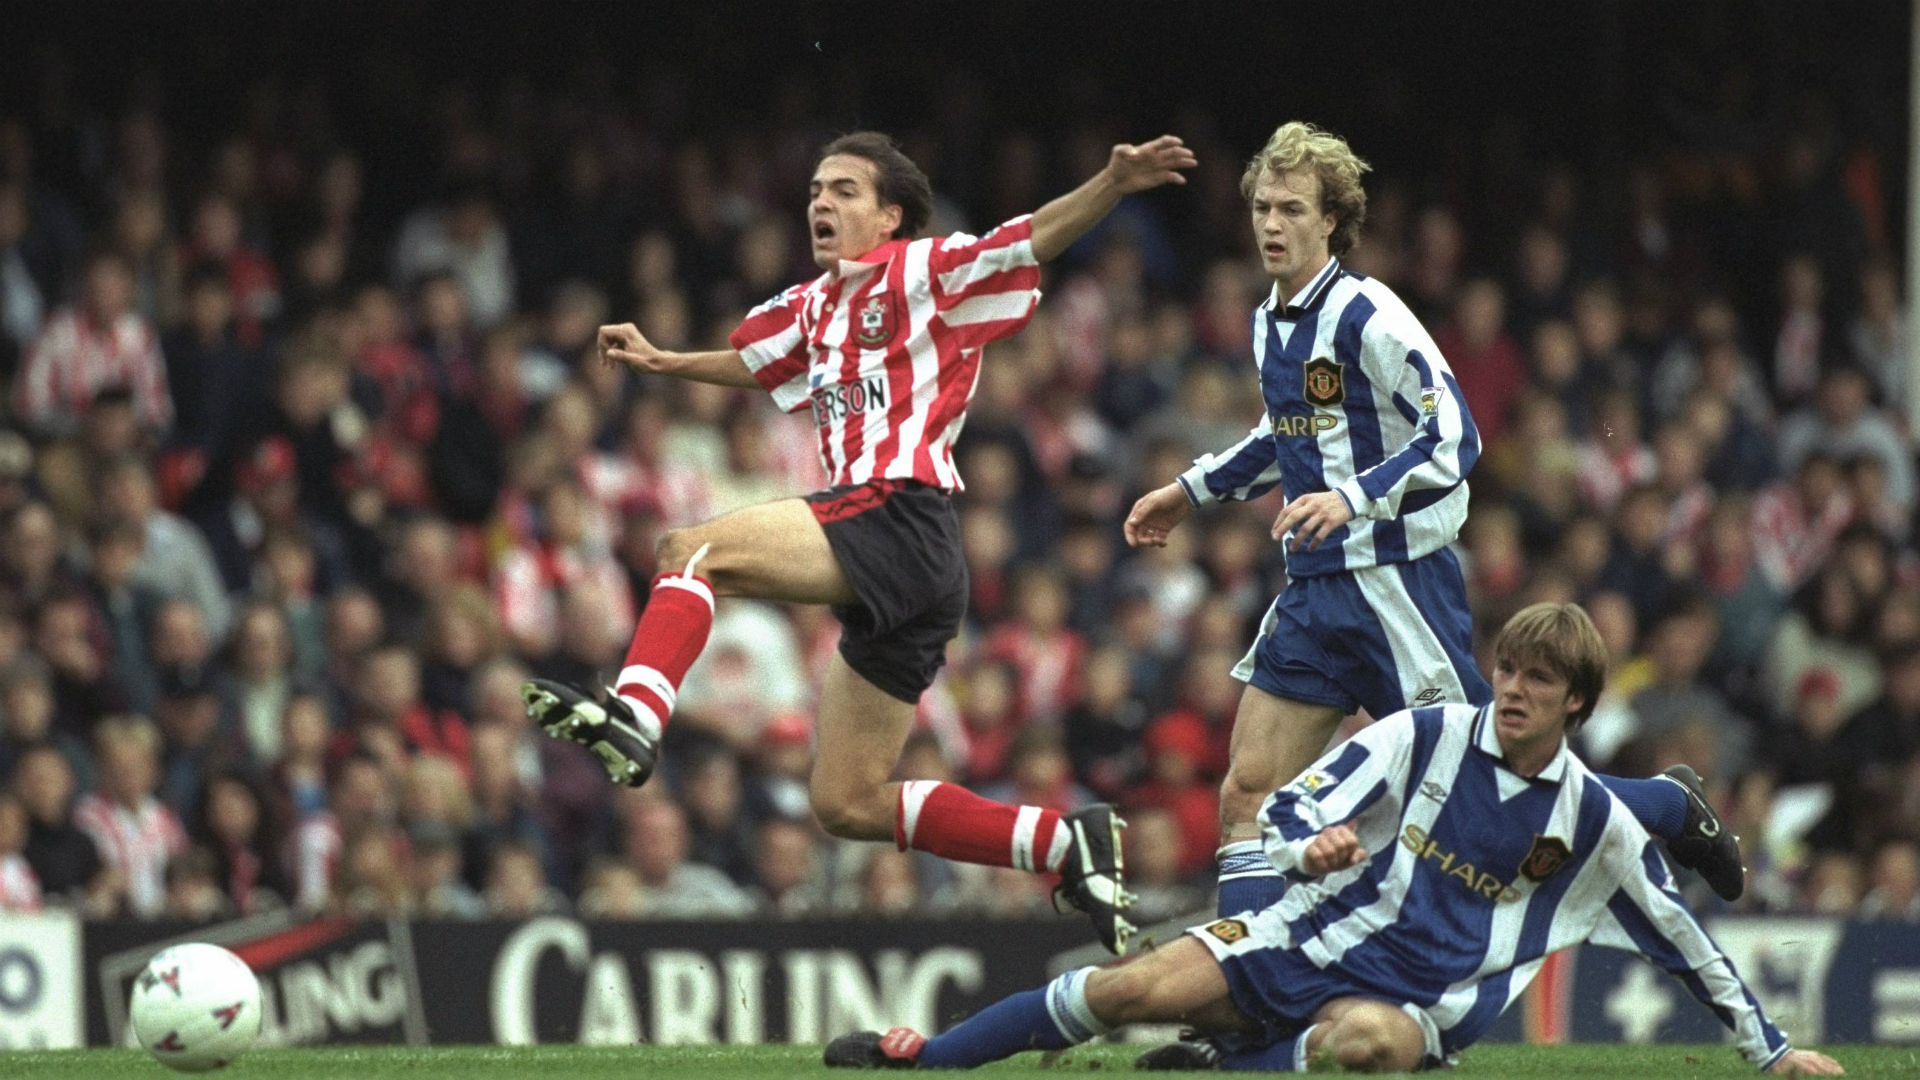 Southampton 6-3 Manchester United (October 1996) – Premier League Archive